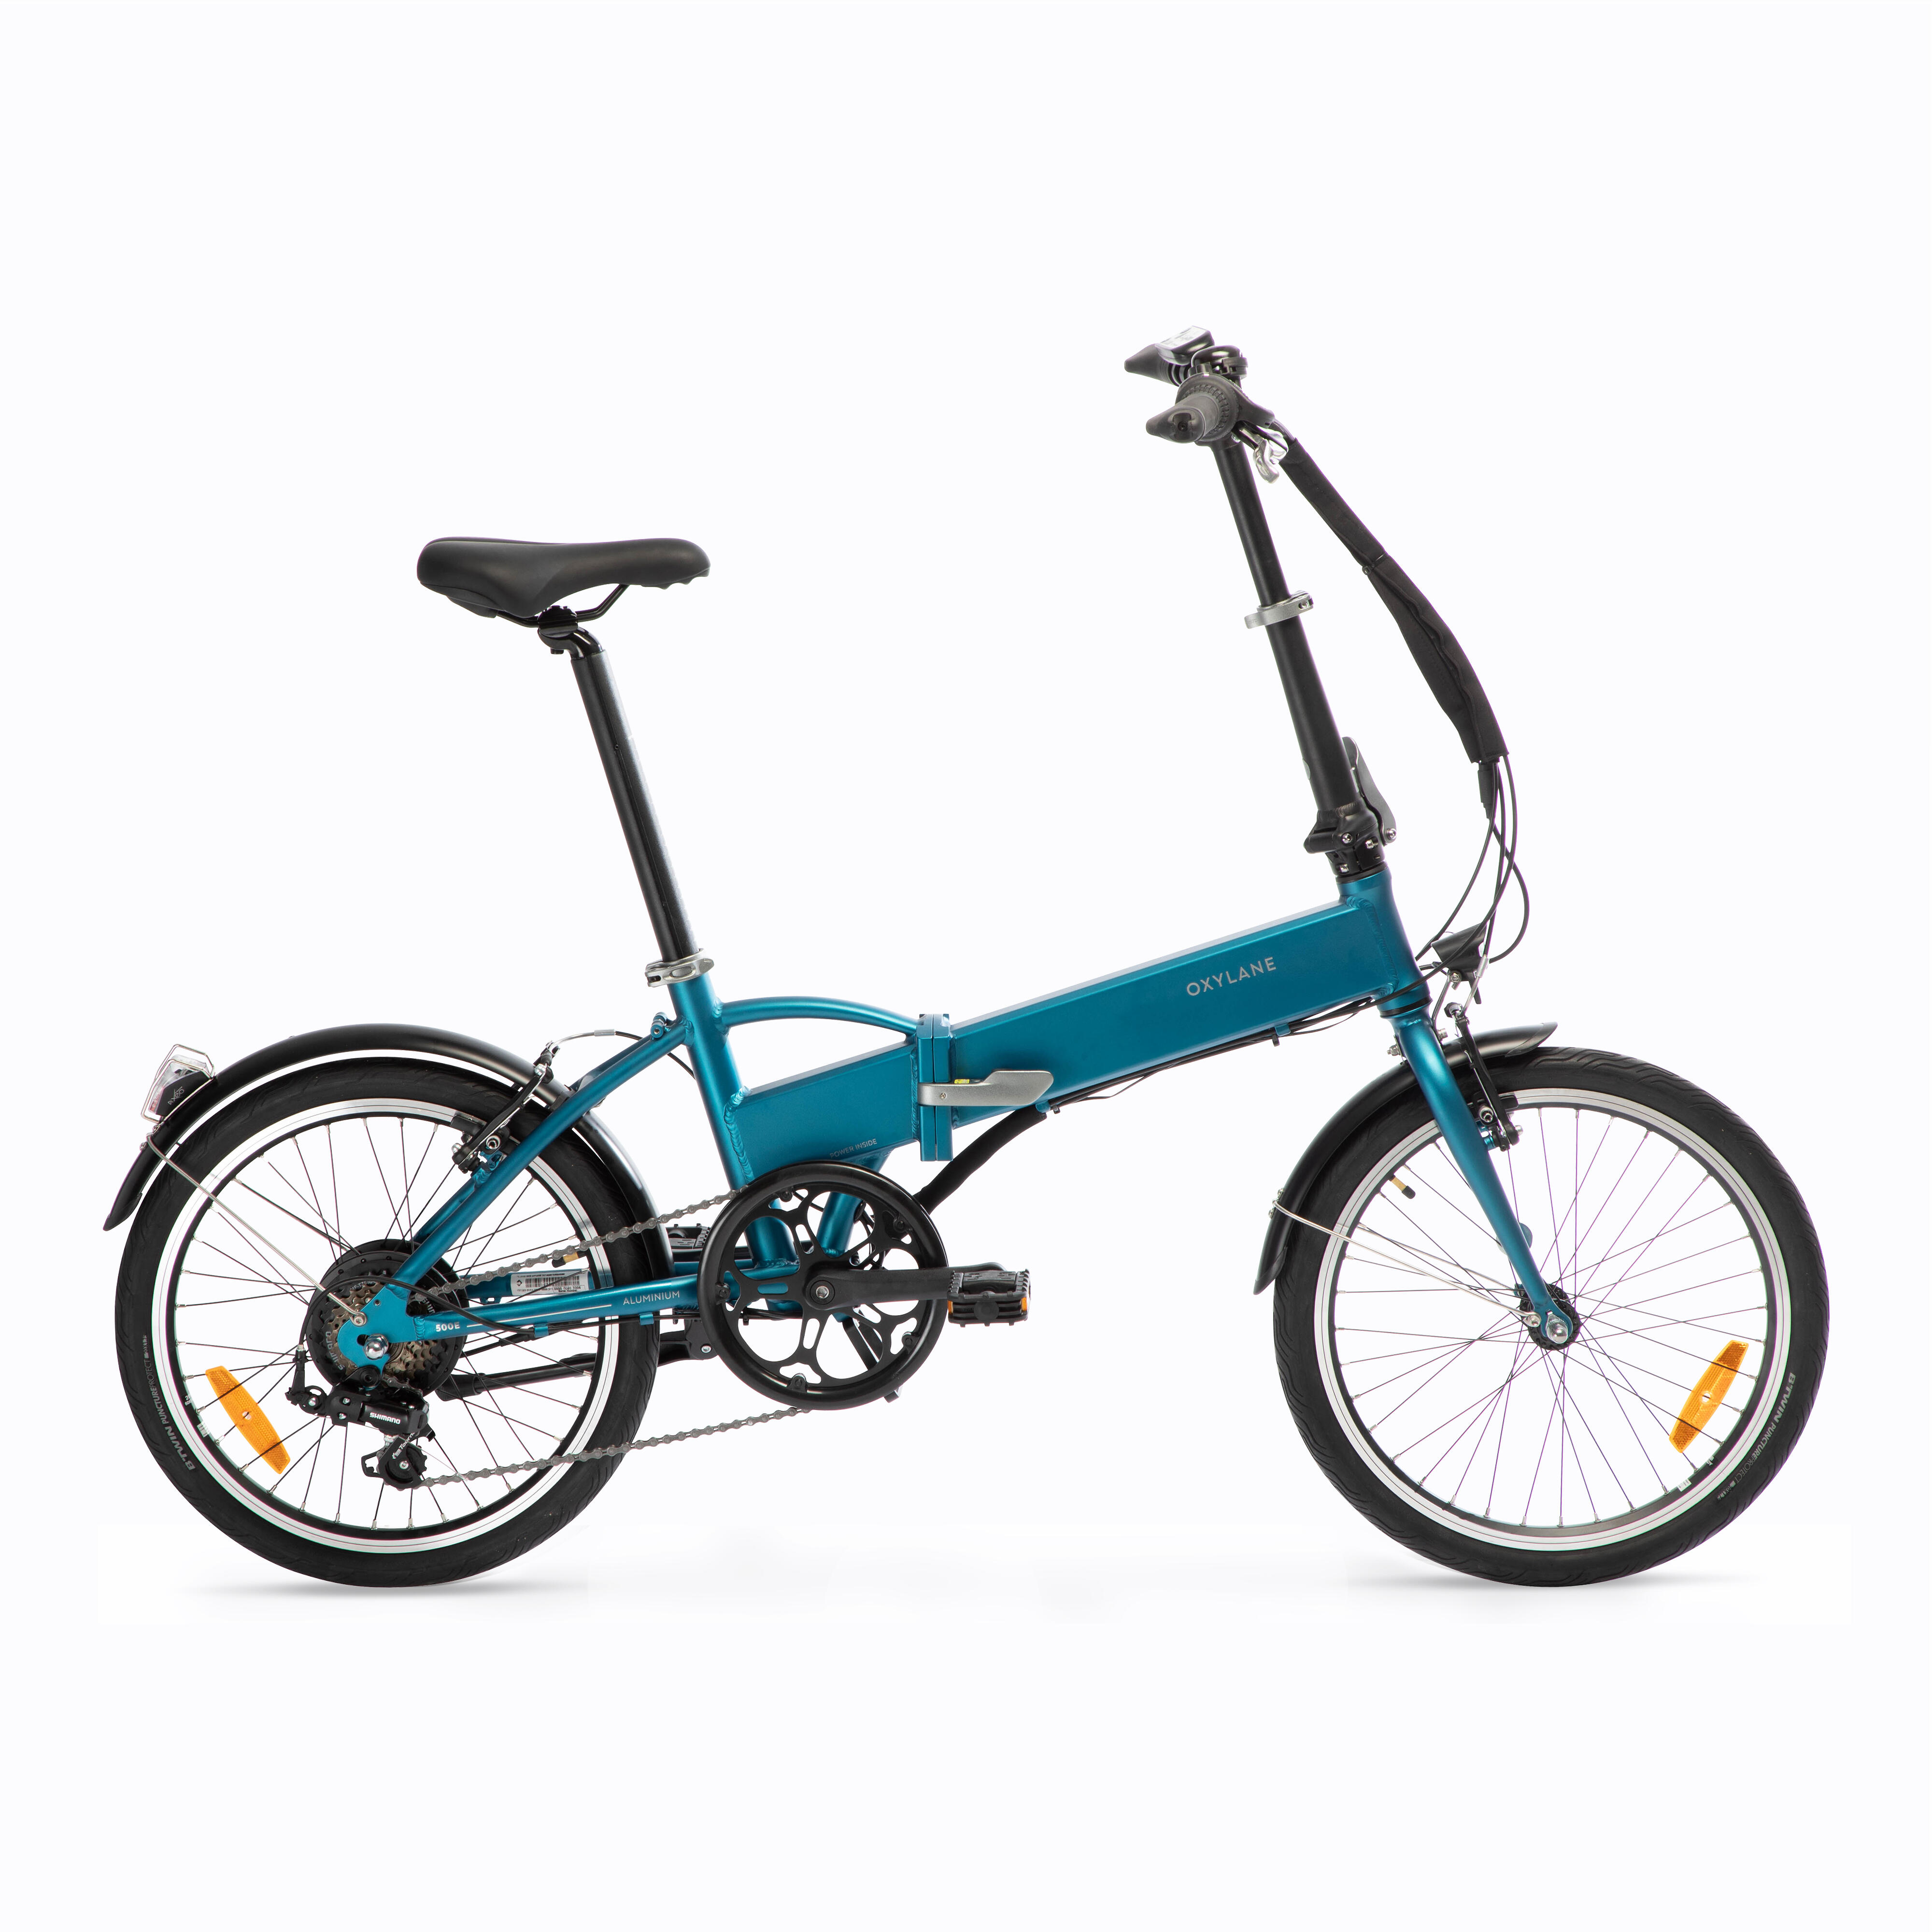 Bicicletă pliabilă cu asistență electrică TILT 500 E Albastru La Oferta Online BTWIN imagine La Oferta Online